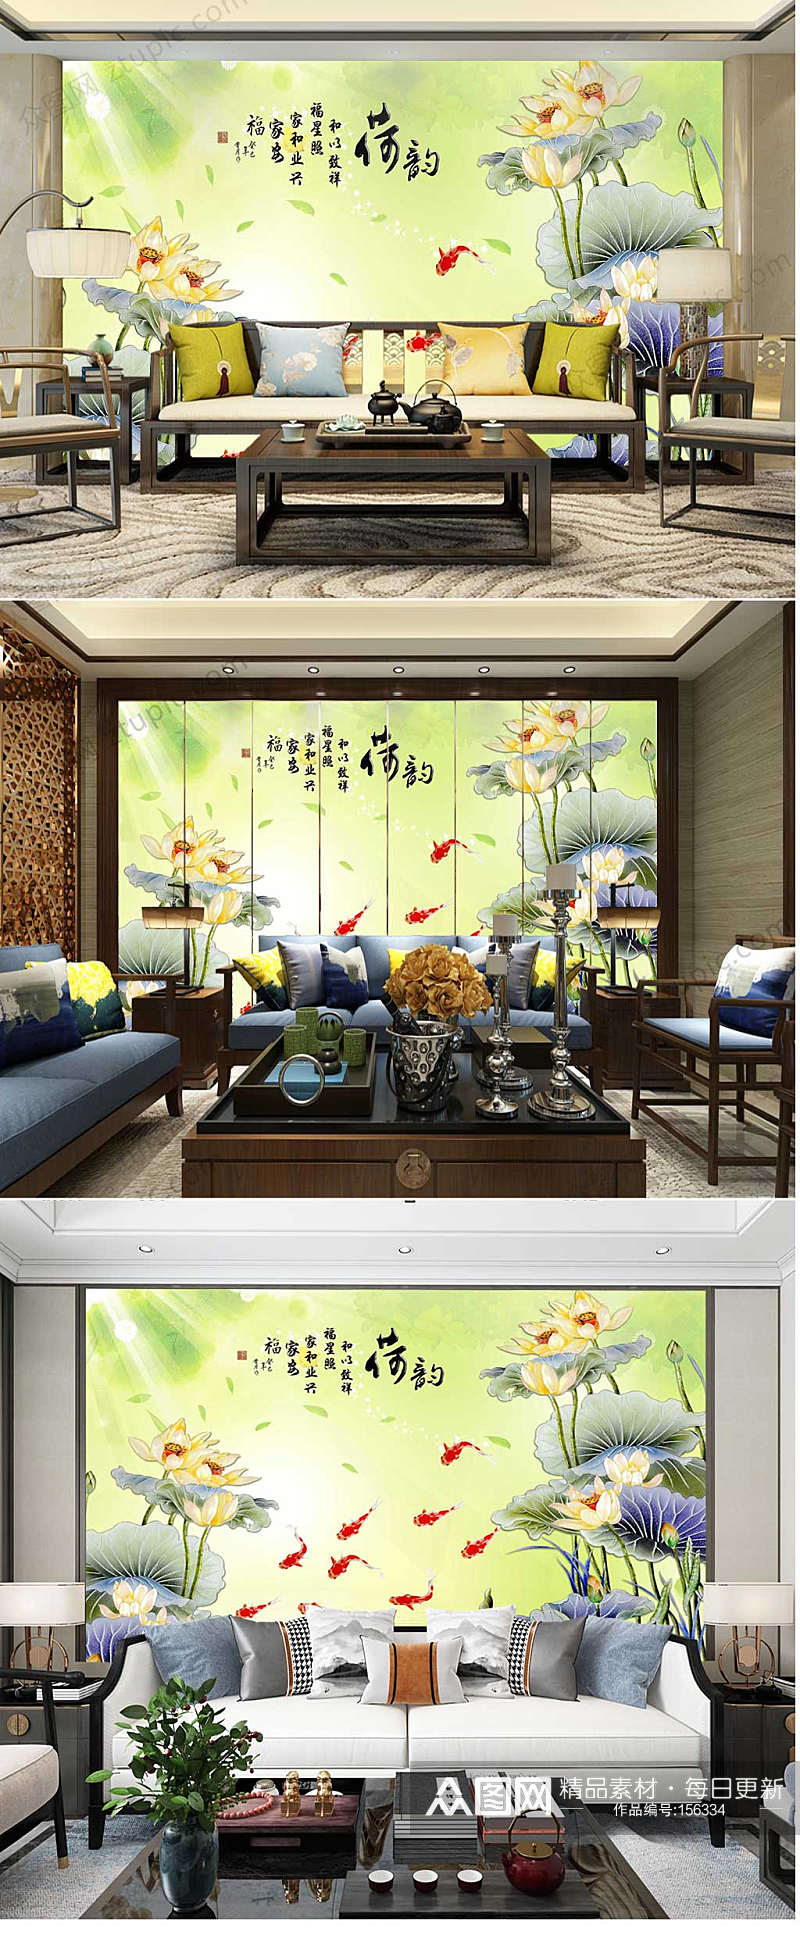 水墨锦鲤荷䪨背景墙素材